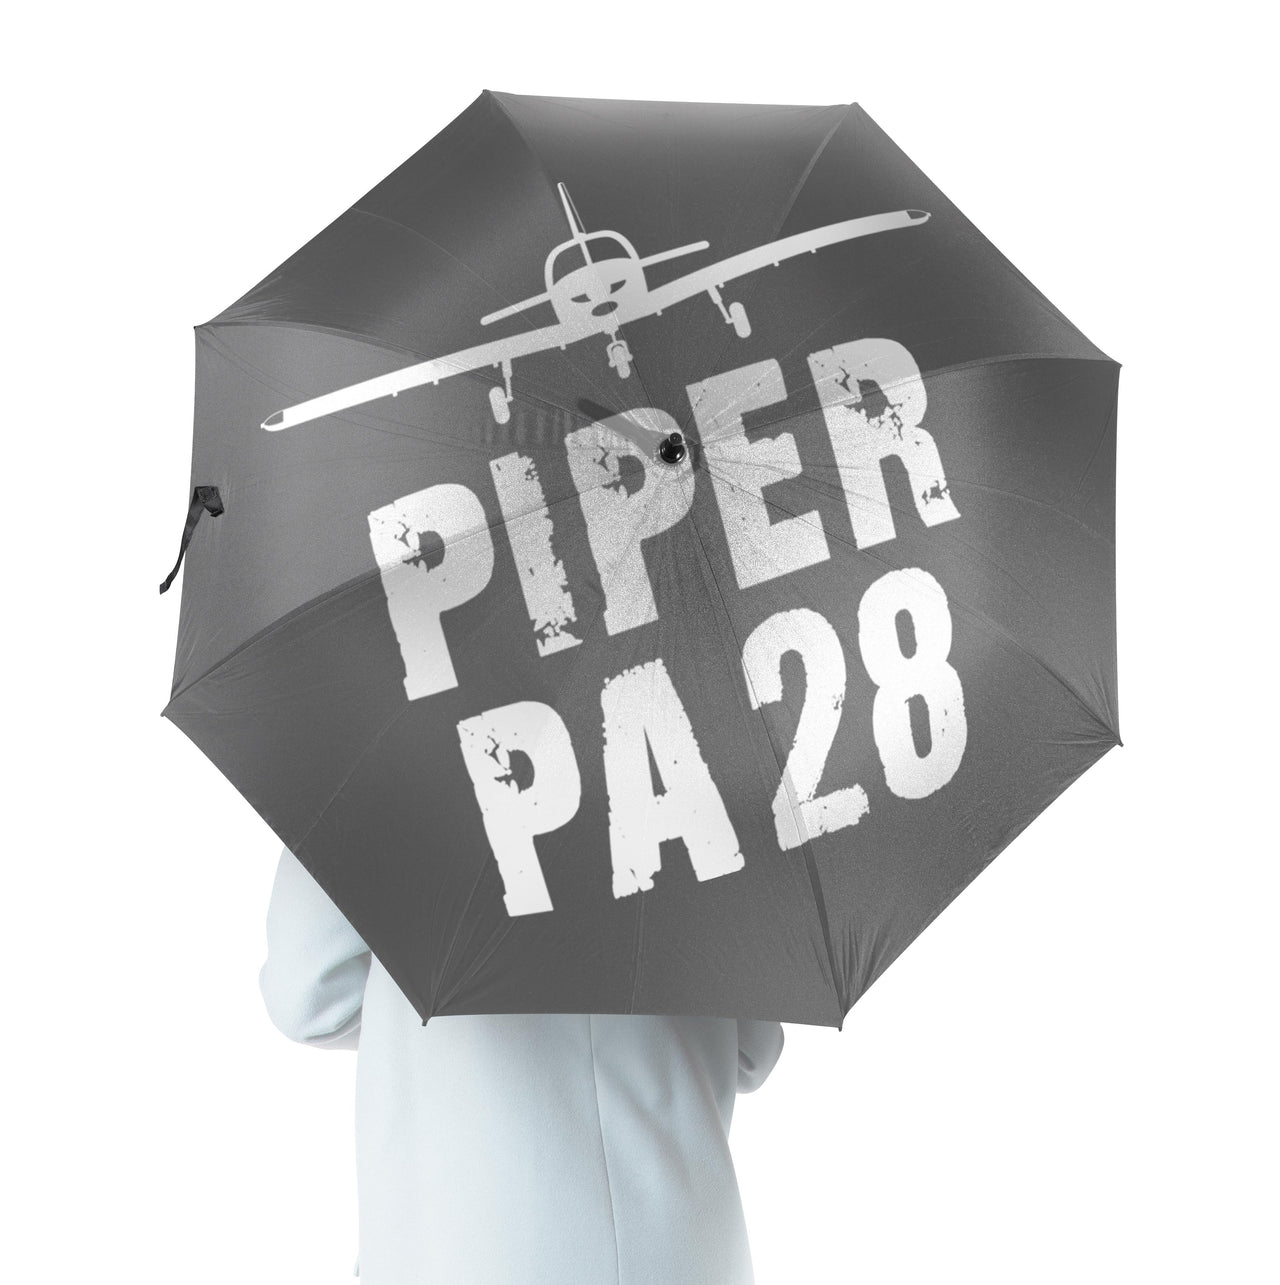 Piper PA28 & Plane Designed Umbrella